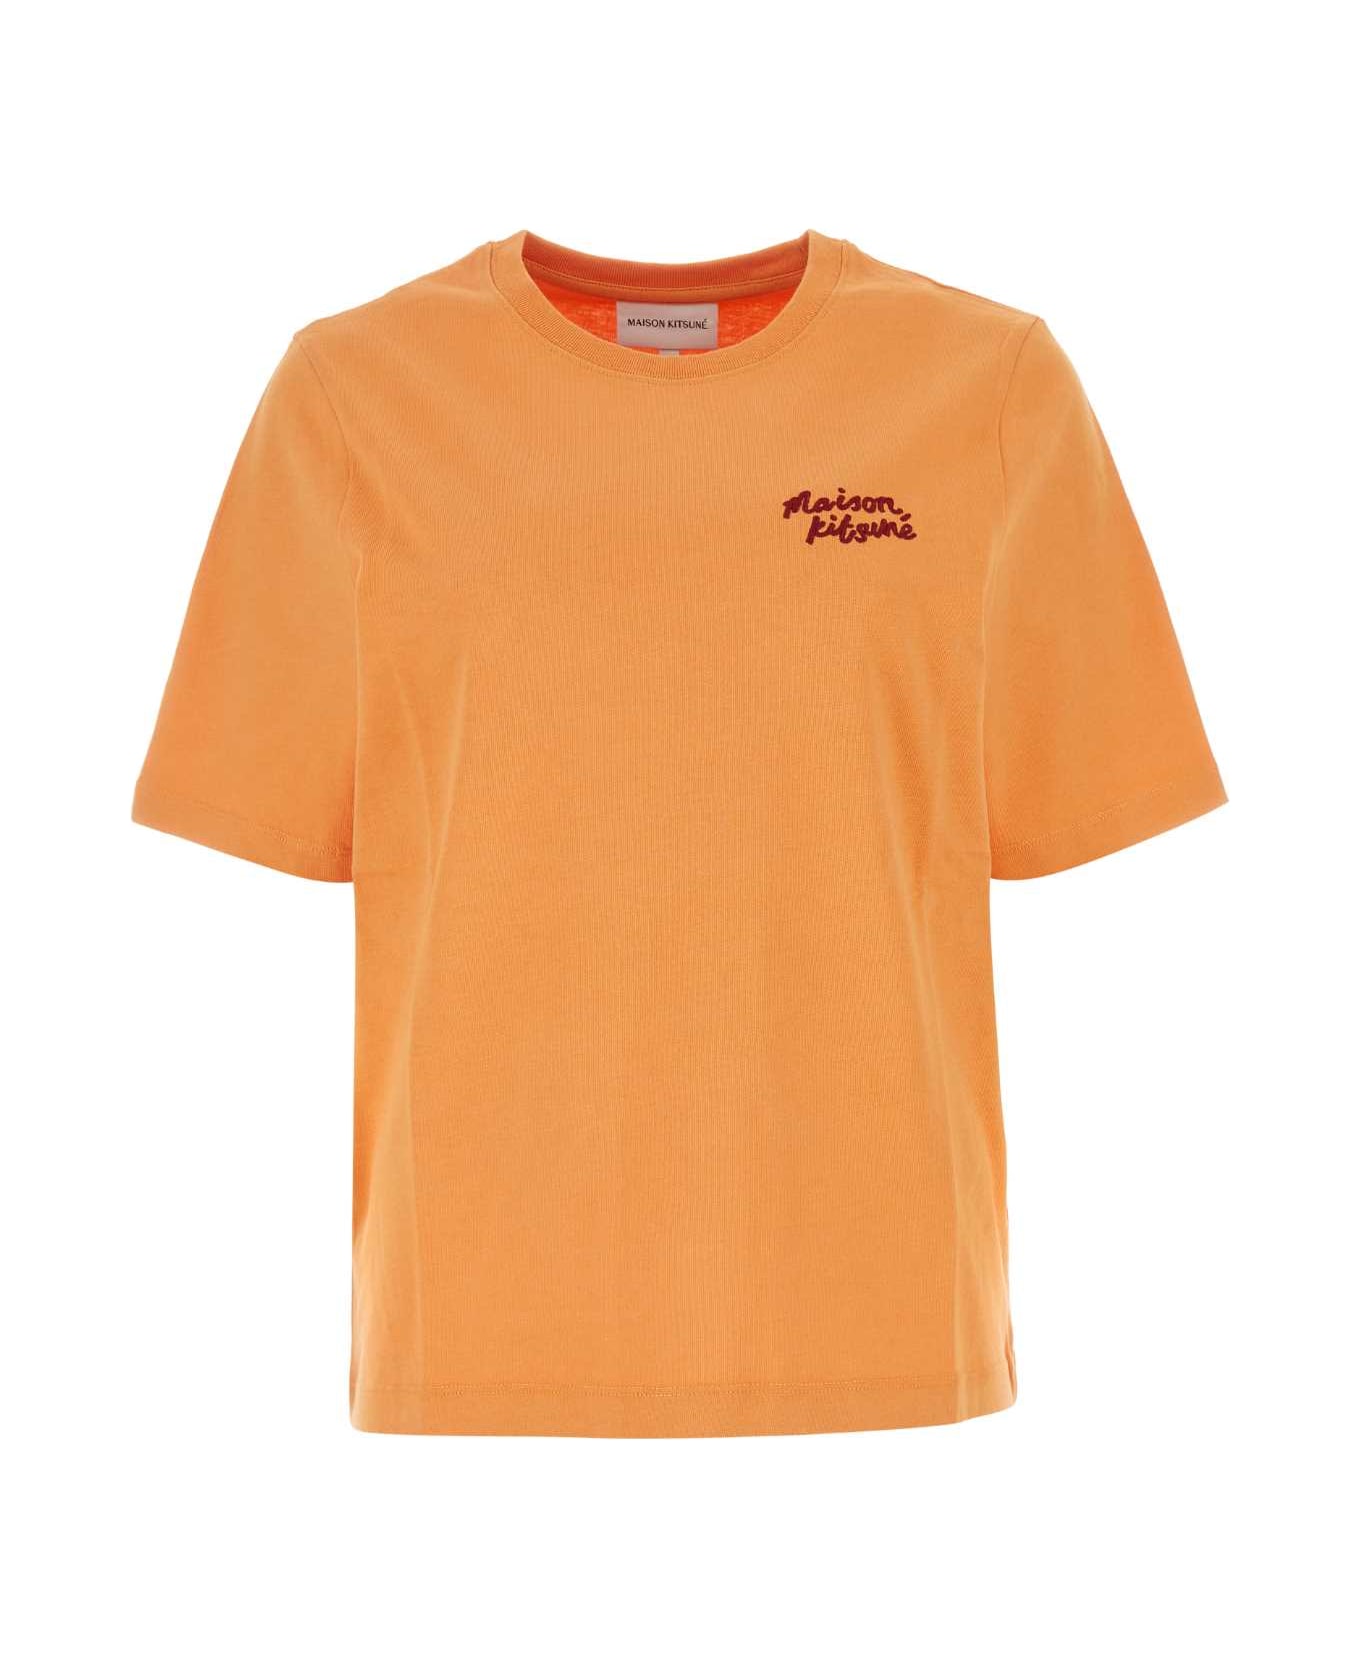 Maison Kitsuné Light Orange Cotton T-shirt - SUNSETORANGE